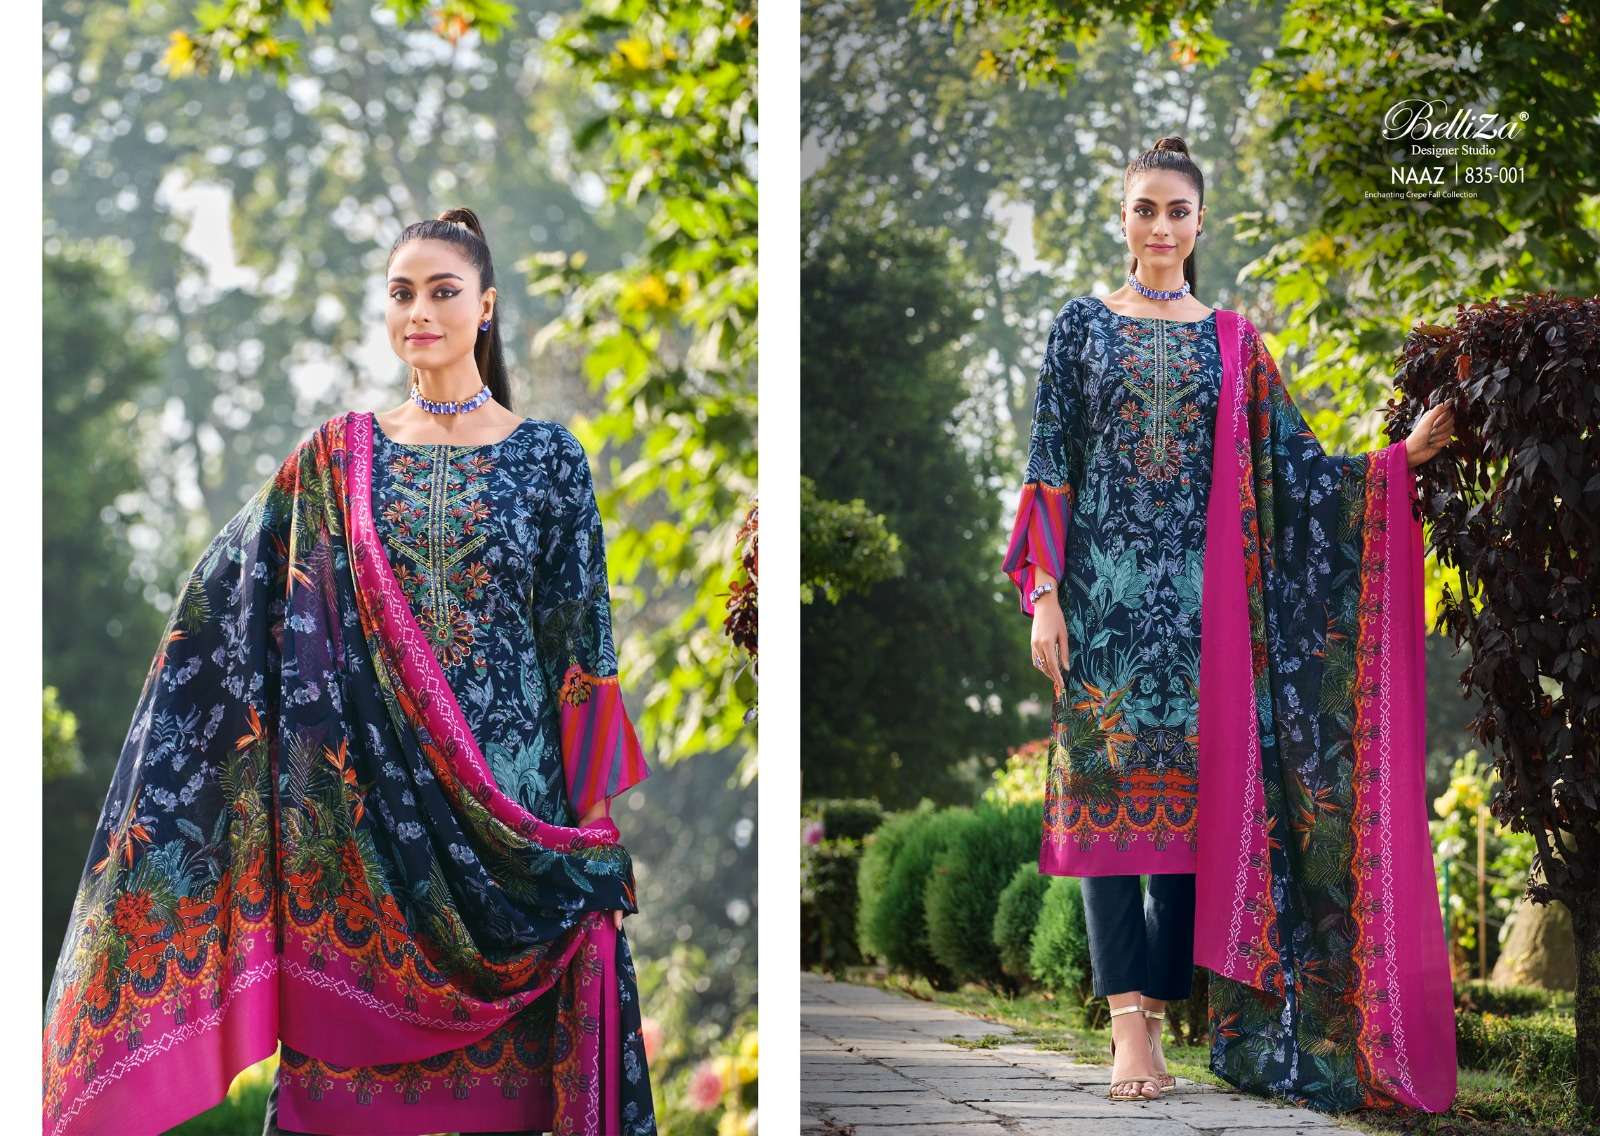 belliza designer studio naaz series pakistani salwar kameez wholesaler surat gujarat